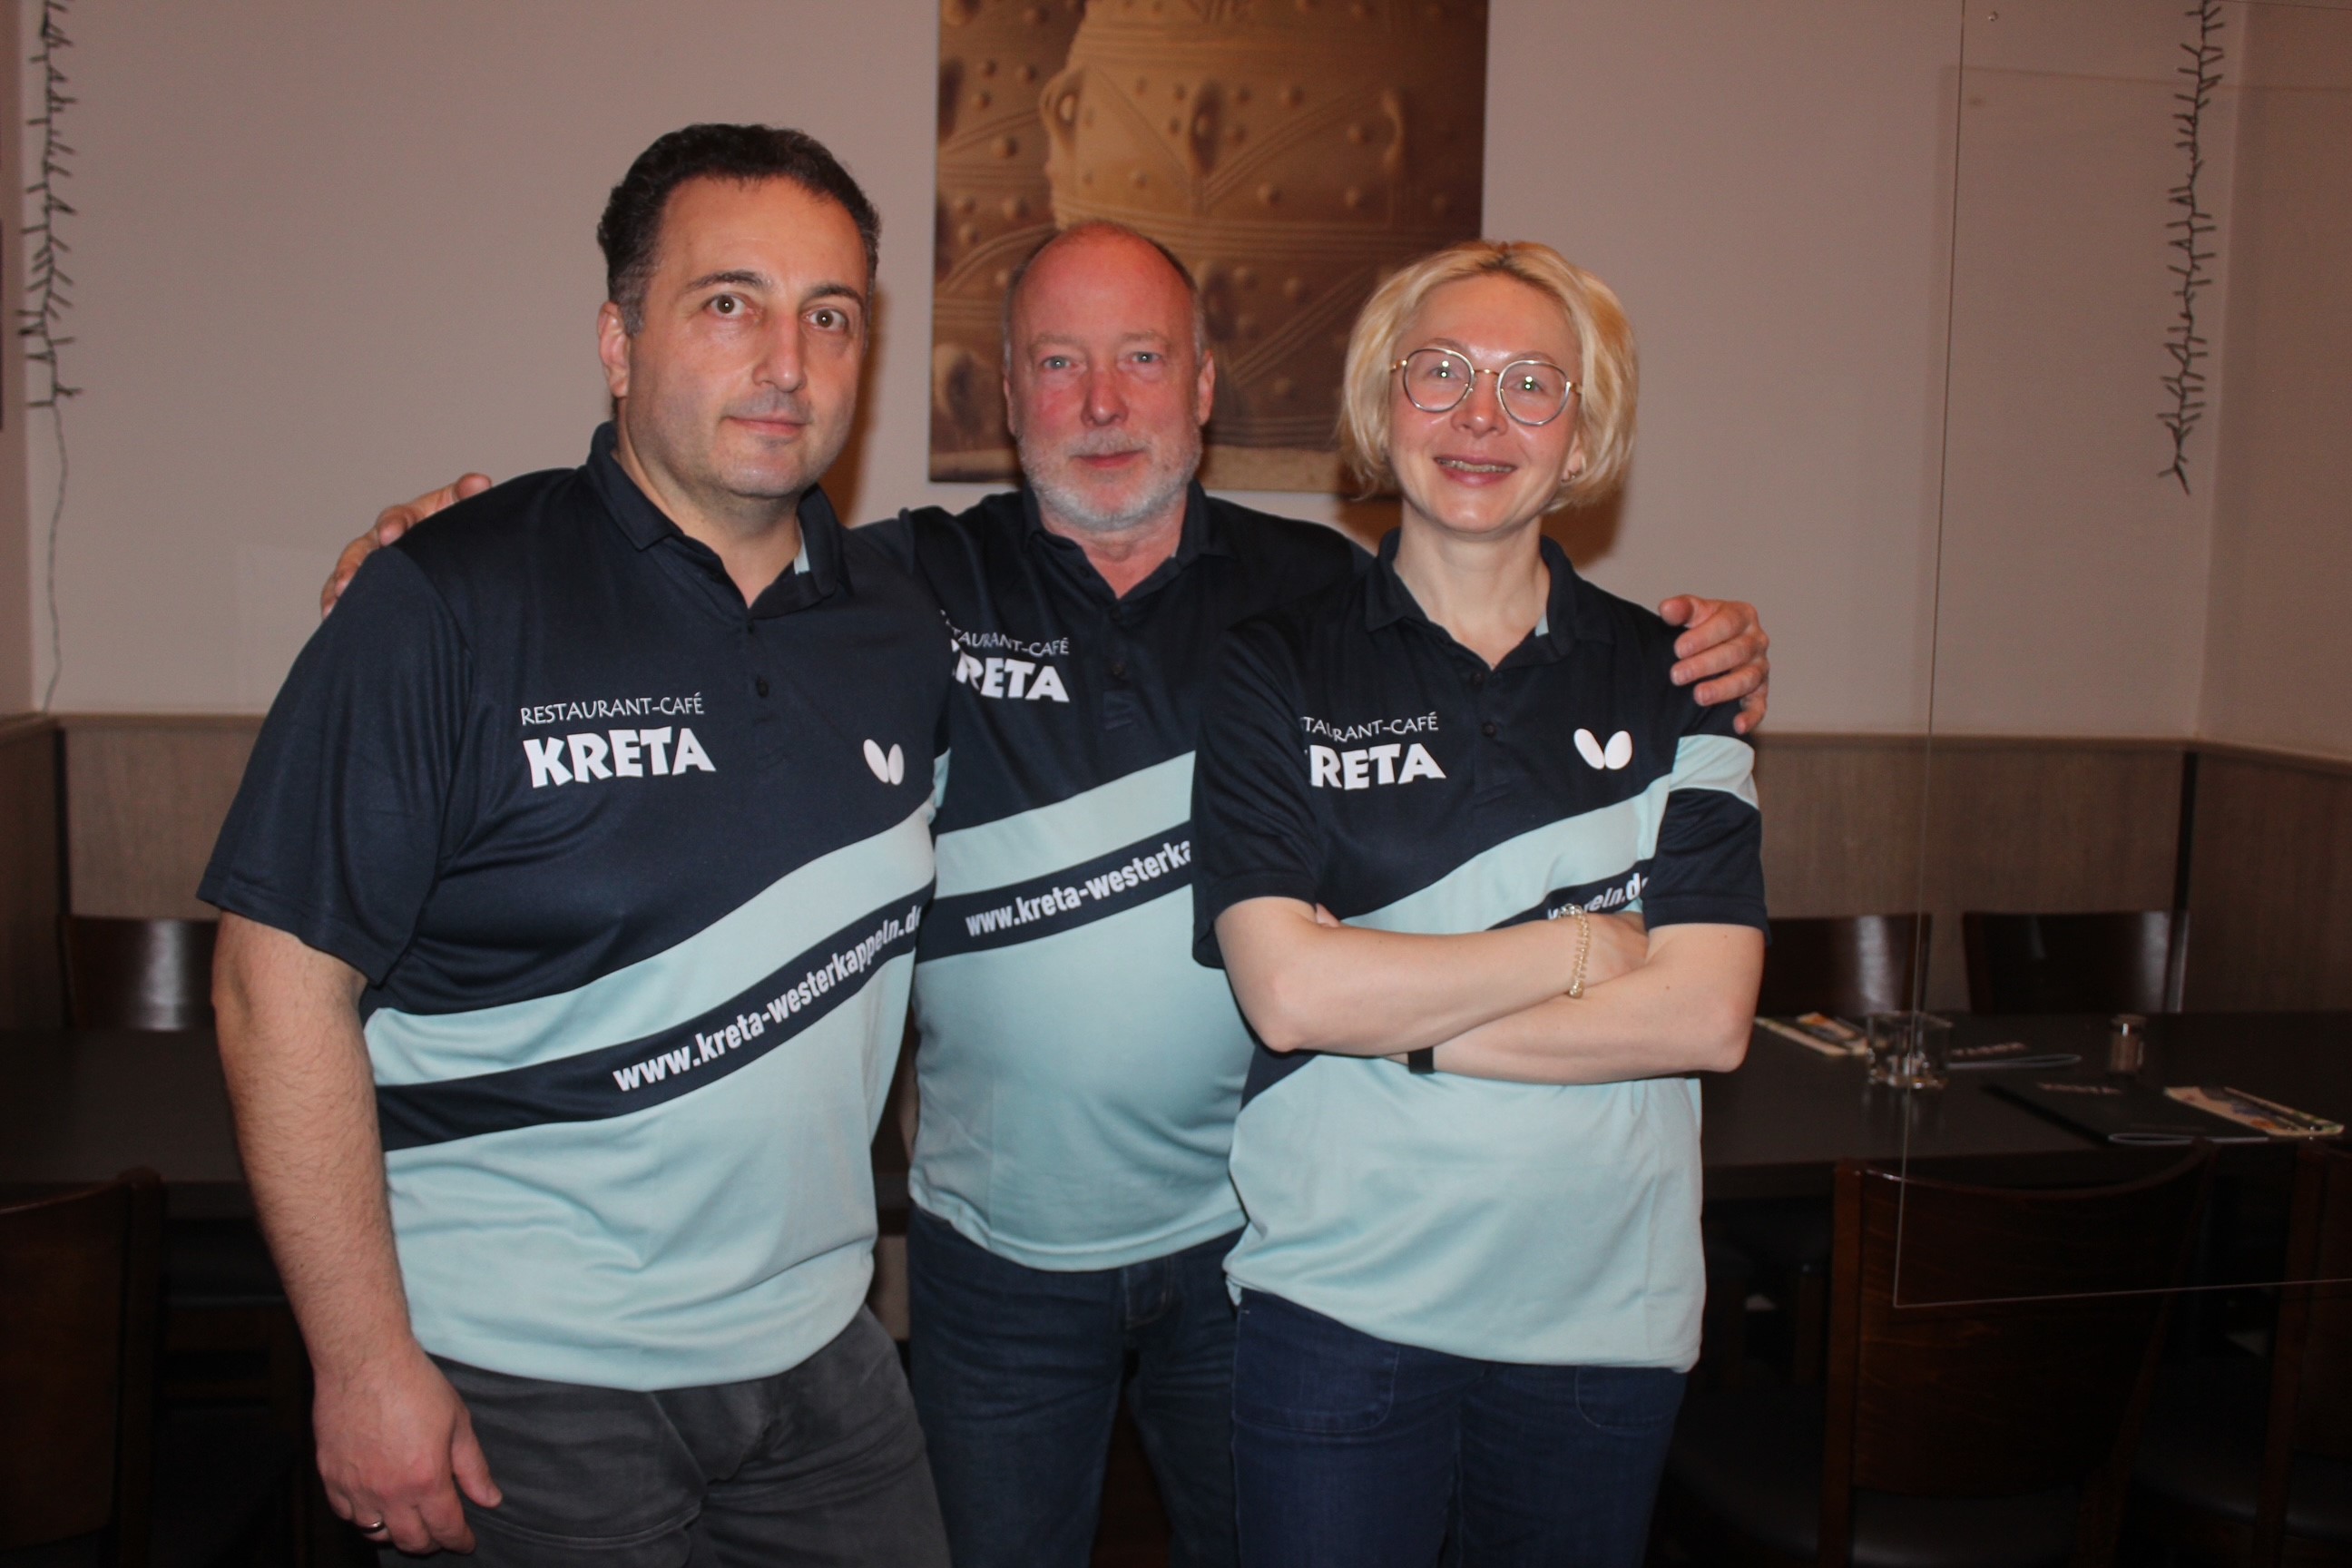 Spartenleiter Werner Elstrodt (Mitte) bedankte sich mit der Übergabe von zwei Trikots bei Pantelis „Lucky“ Karalazos und dessen Frau Tanja vom Restaurant Kreta für die finanzielle Unterstützung bei der Anschaffung neuer Trikots. 